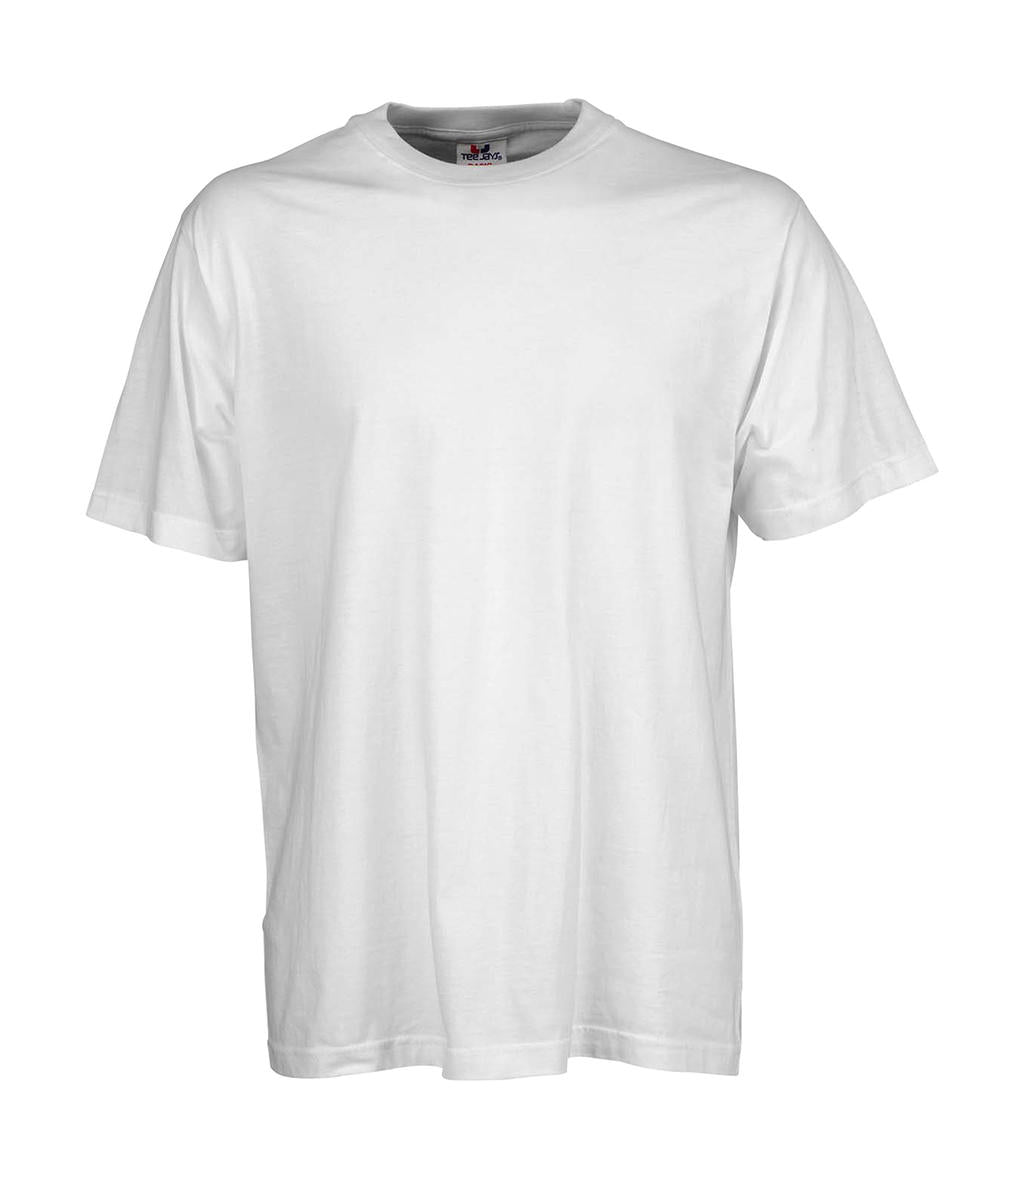 Tee Jays Herren T-Shirt Basic Rundhalsshirt Tee Shirt TShirt Kurzarm